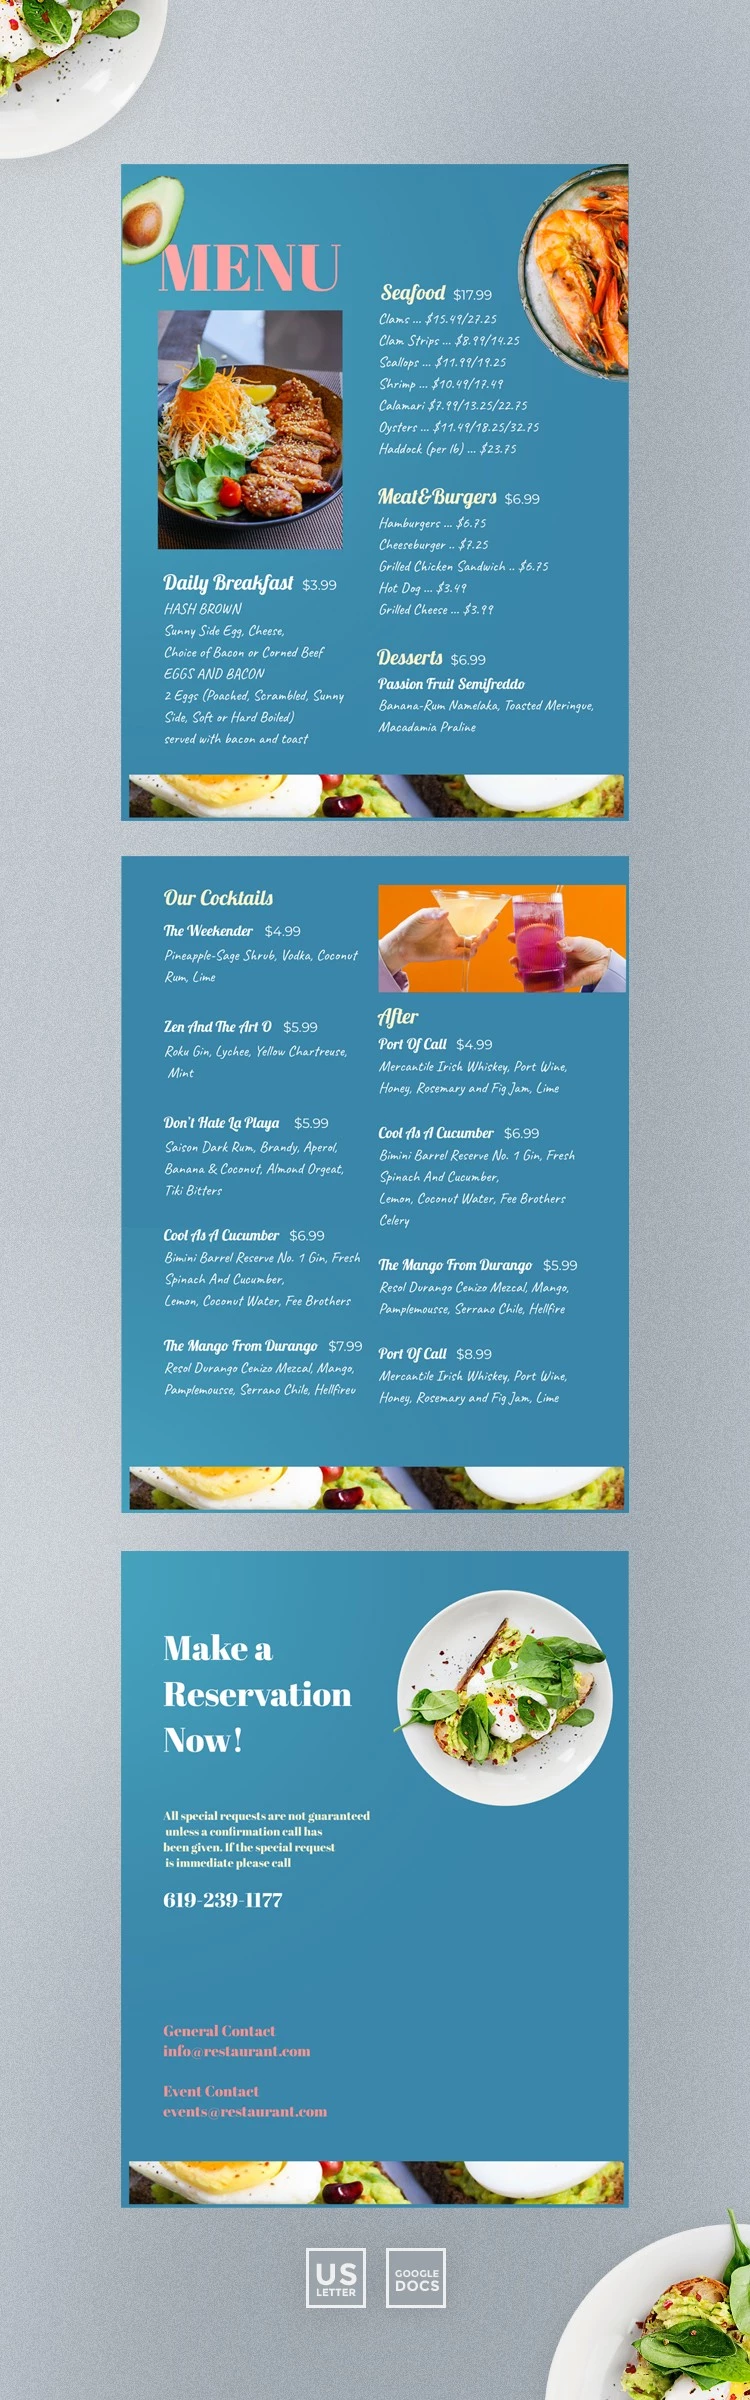 餐厅菜单设计 - free Google Docs Template - 10061509